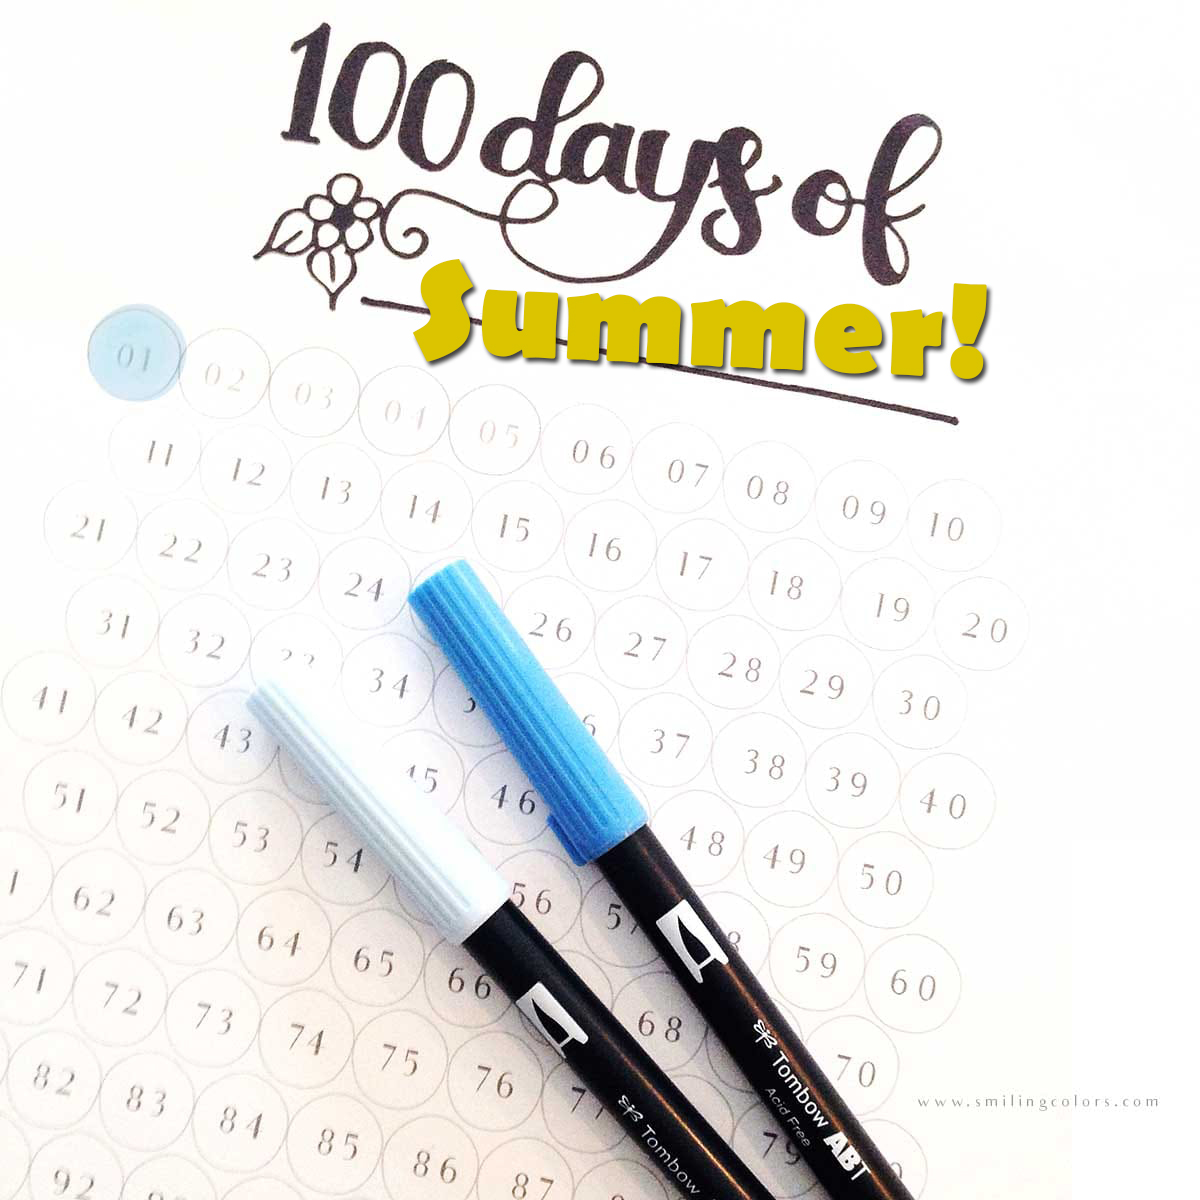 100 Days Of Summer Challenge